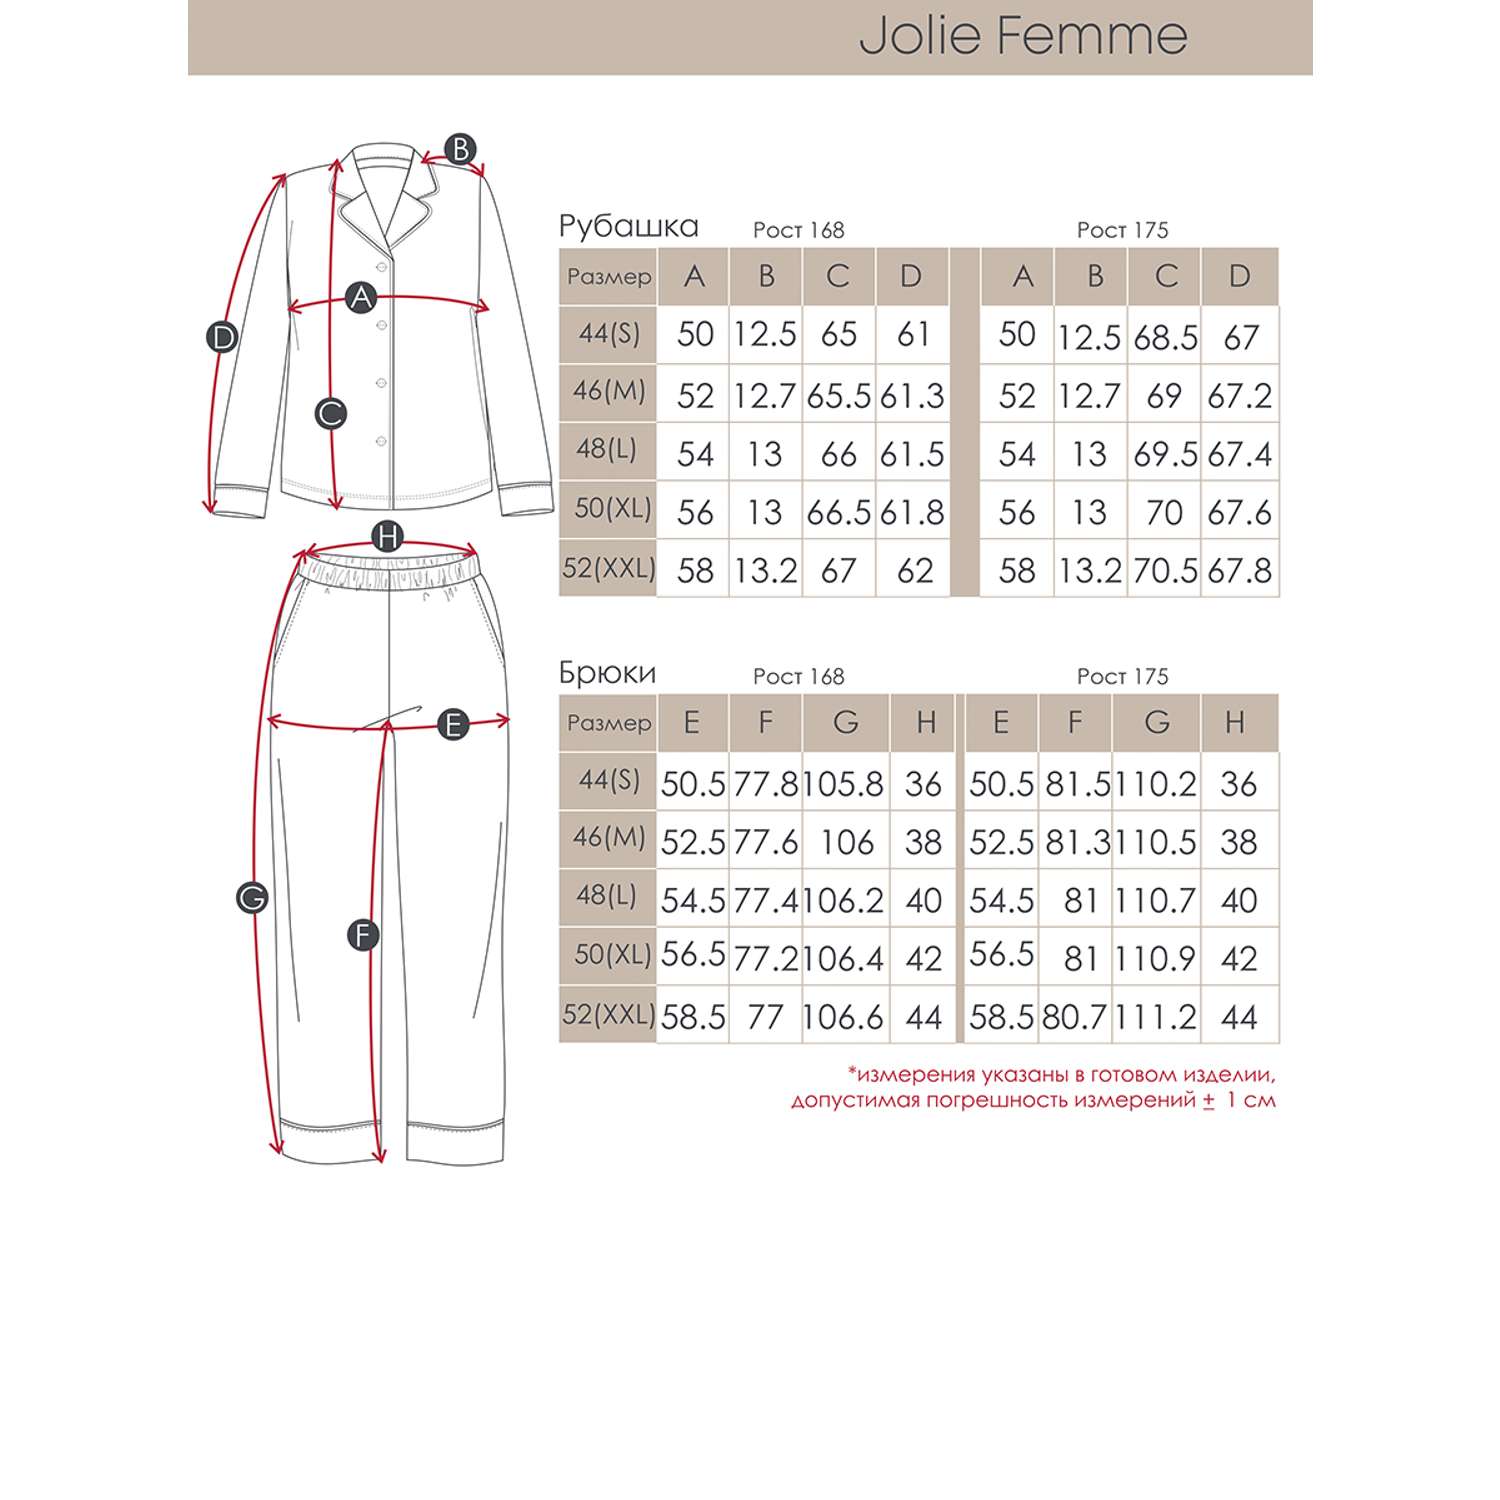 Пижама Jolie Femme J266/233/кл - фото 13